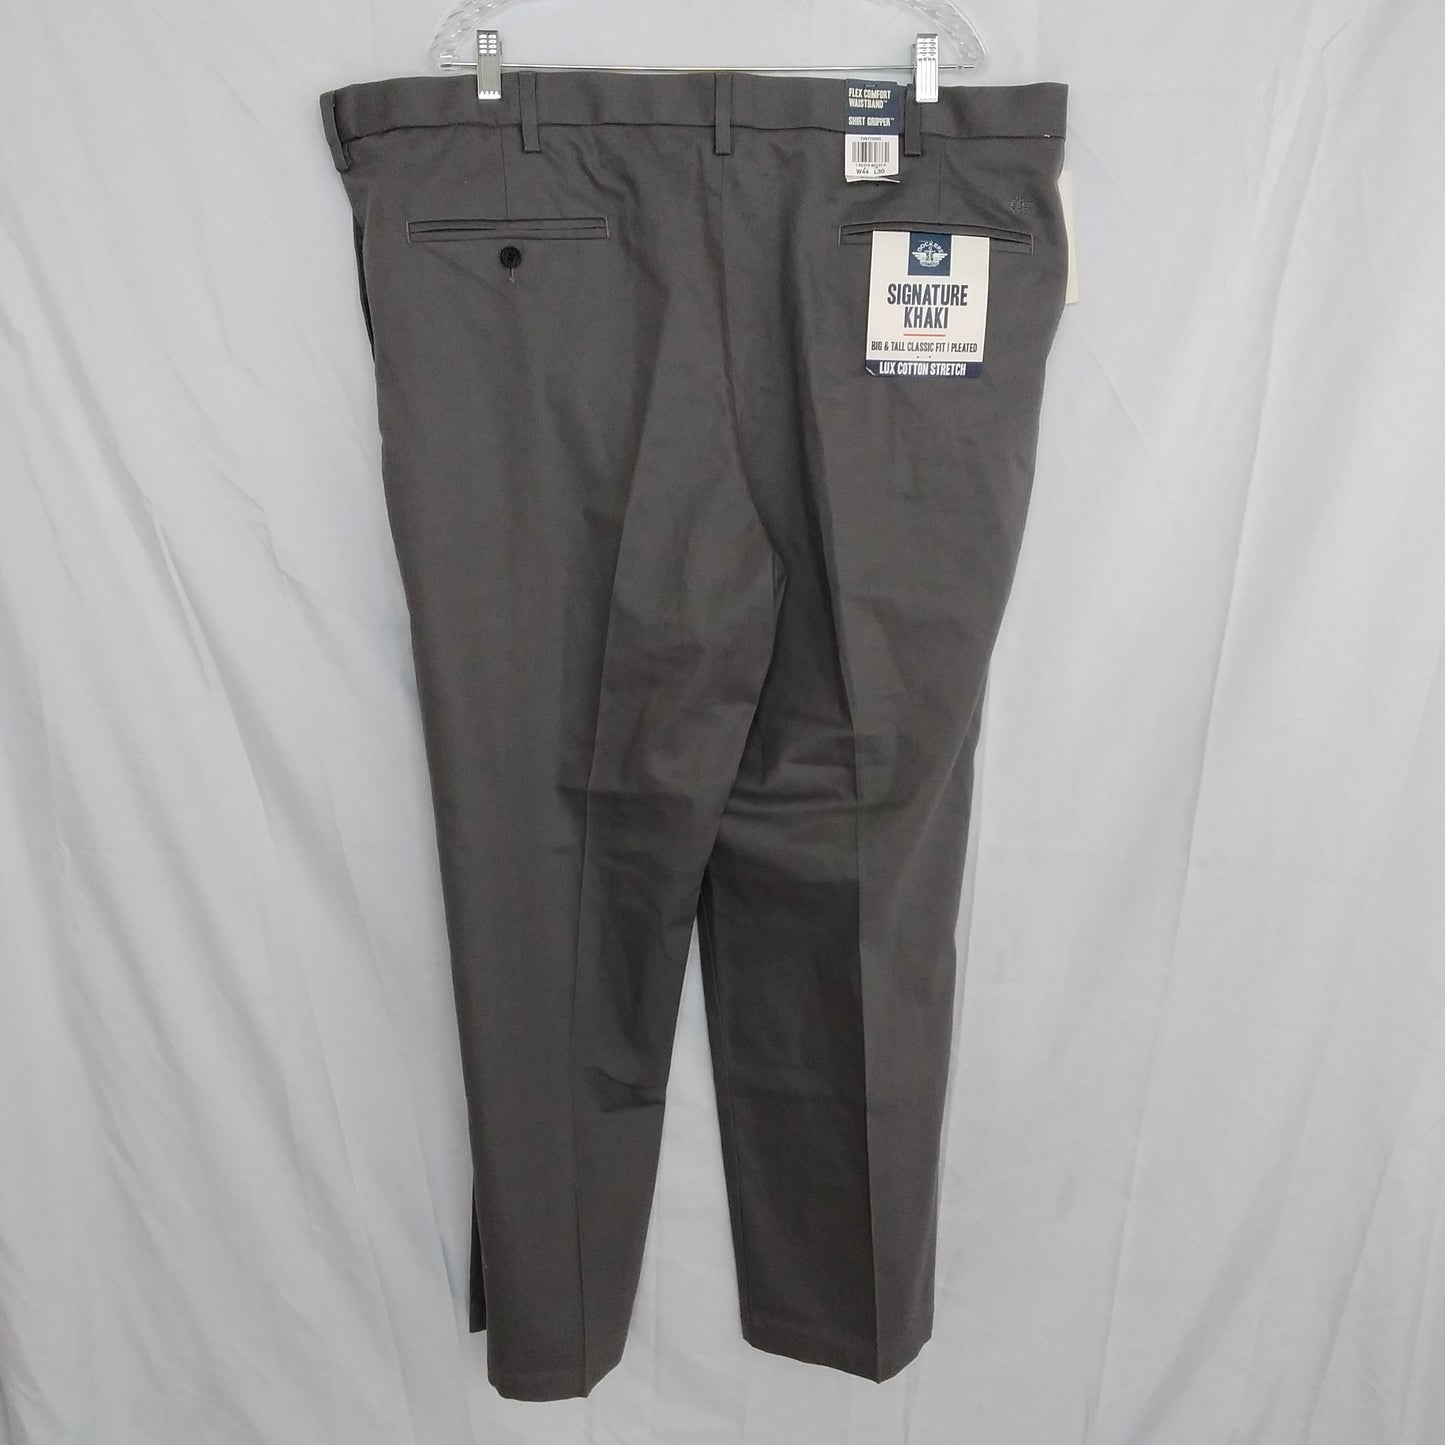 NWT - Dockers Big & Tall Gray Signature Khaki Pants - Size W44 L30